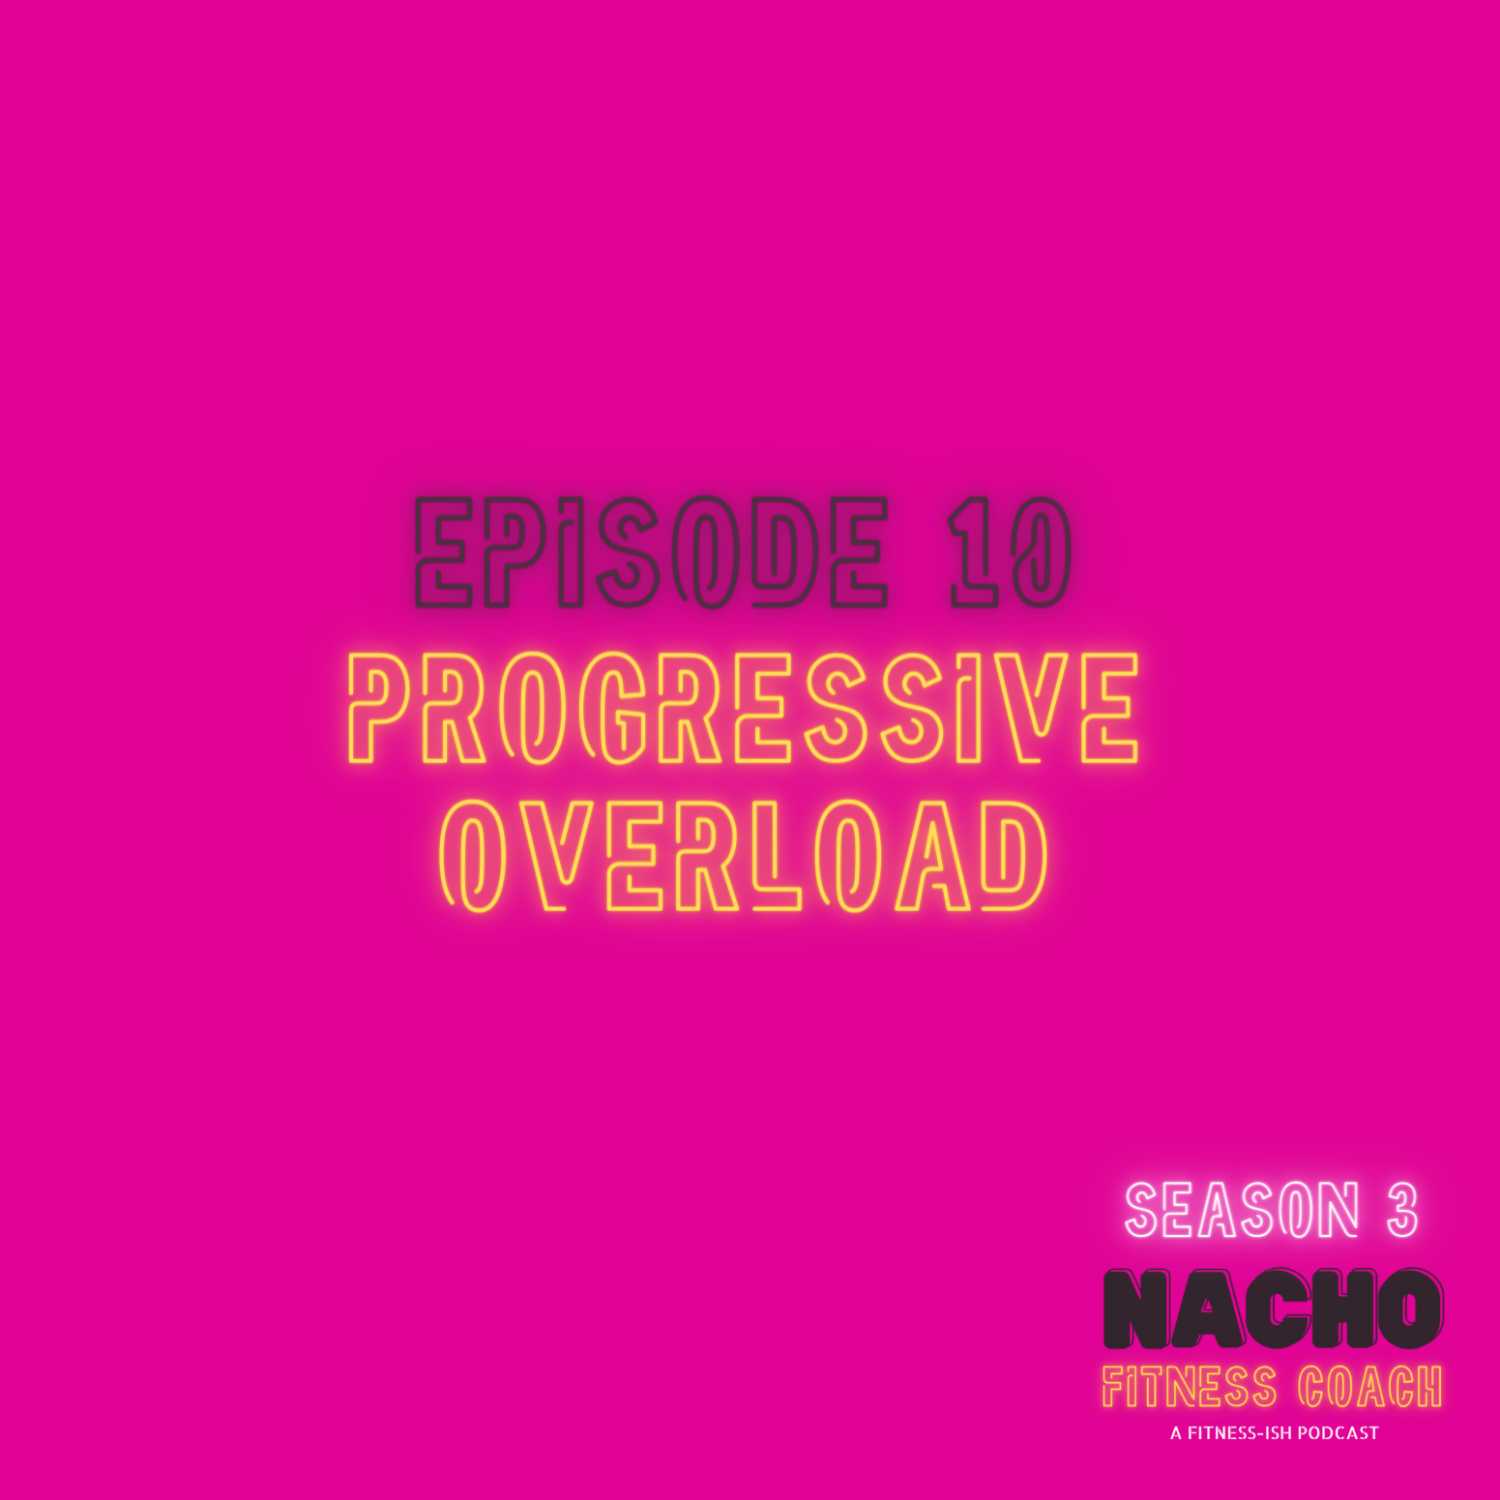 Progressive Overload: Do You Even Lift, Bro?